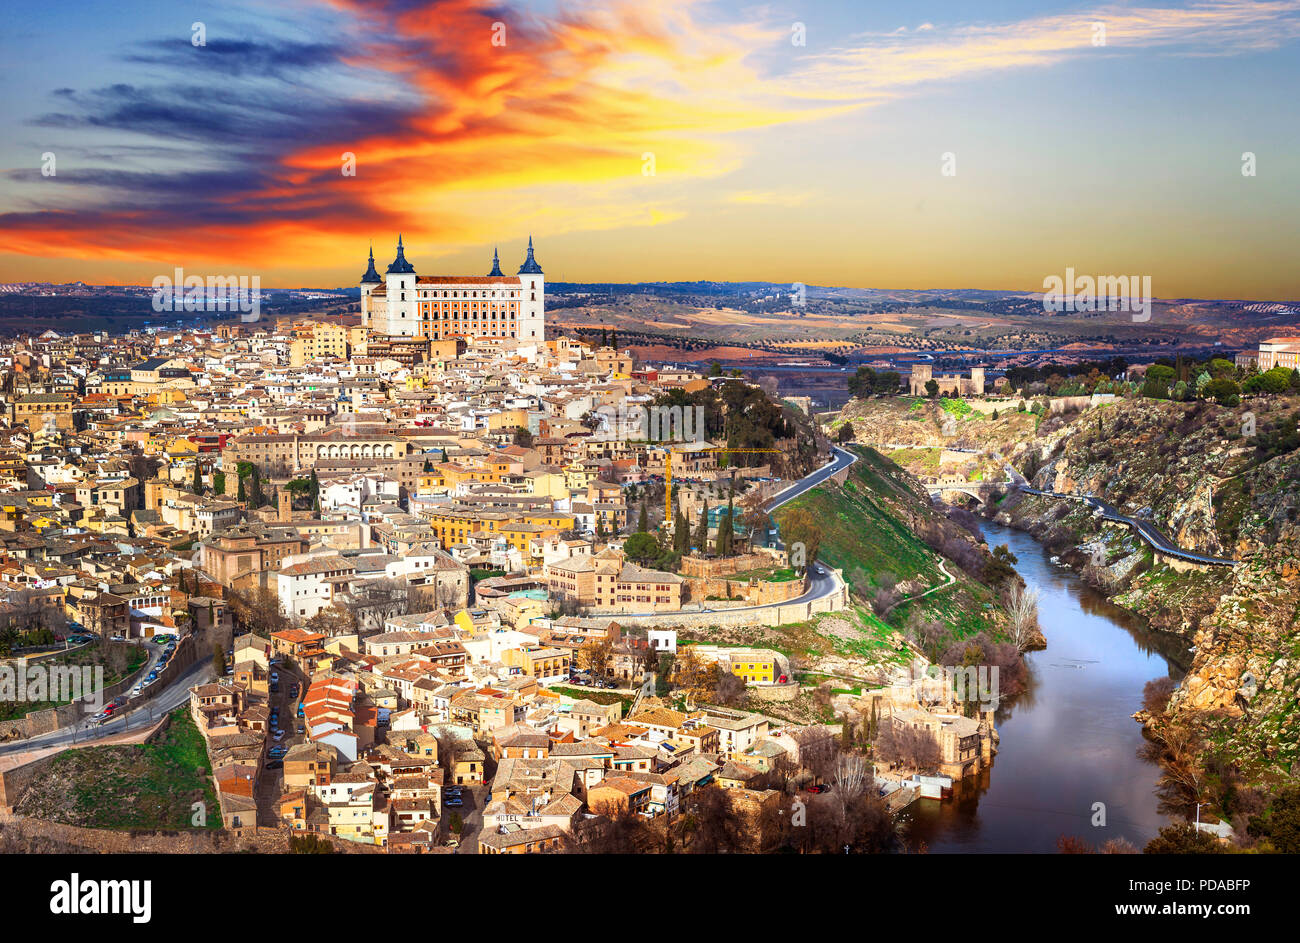 Impressionante città di Toledo oltre il tramonto,Spagna. Foto Stock